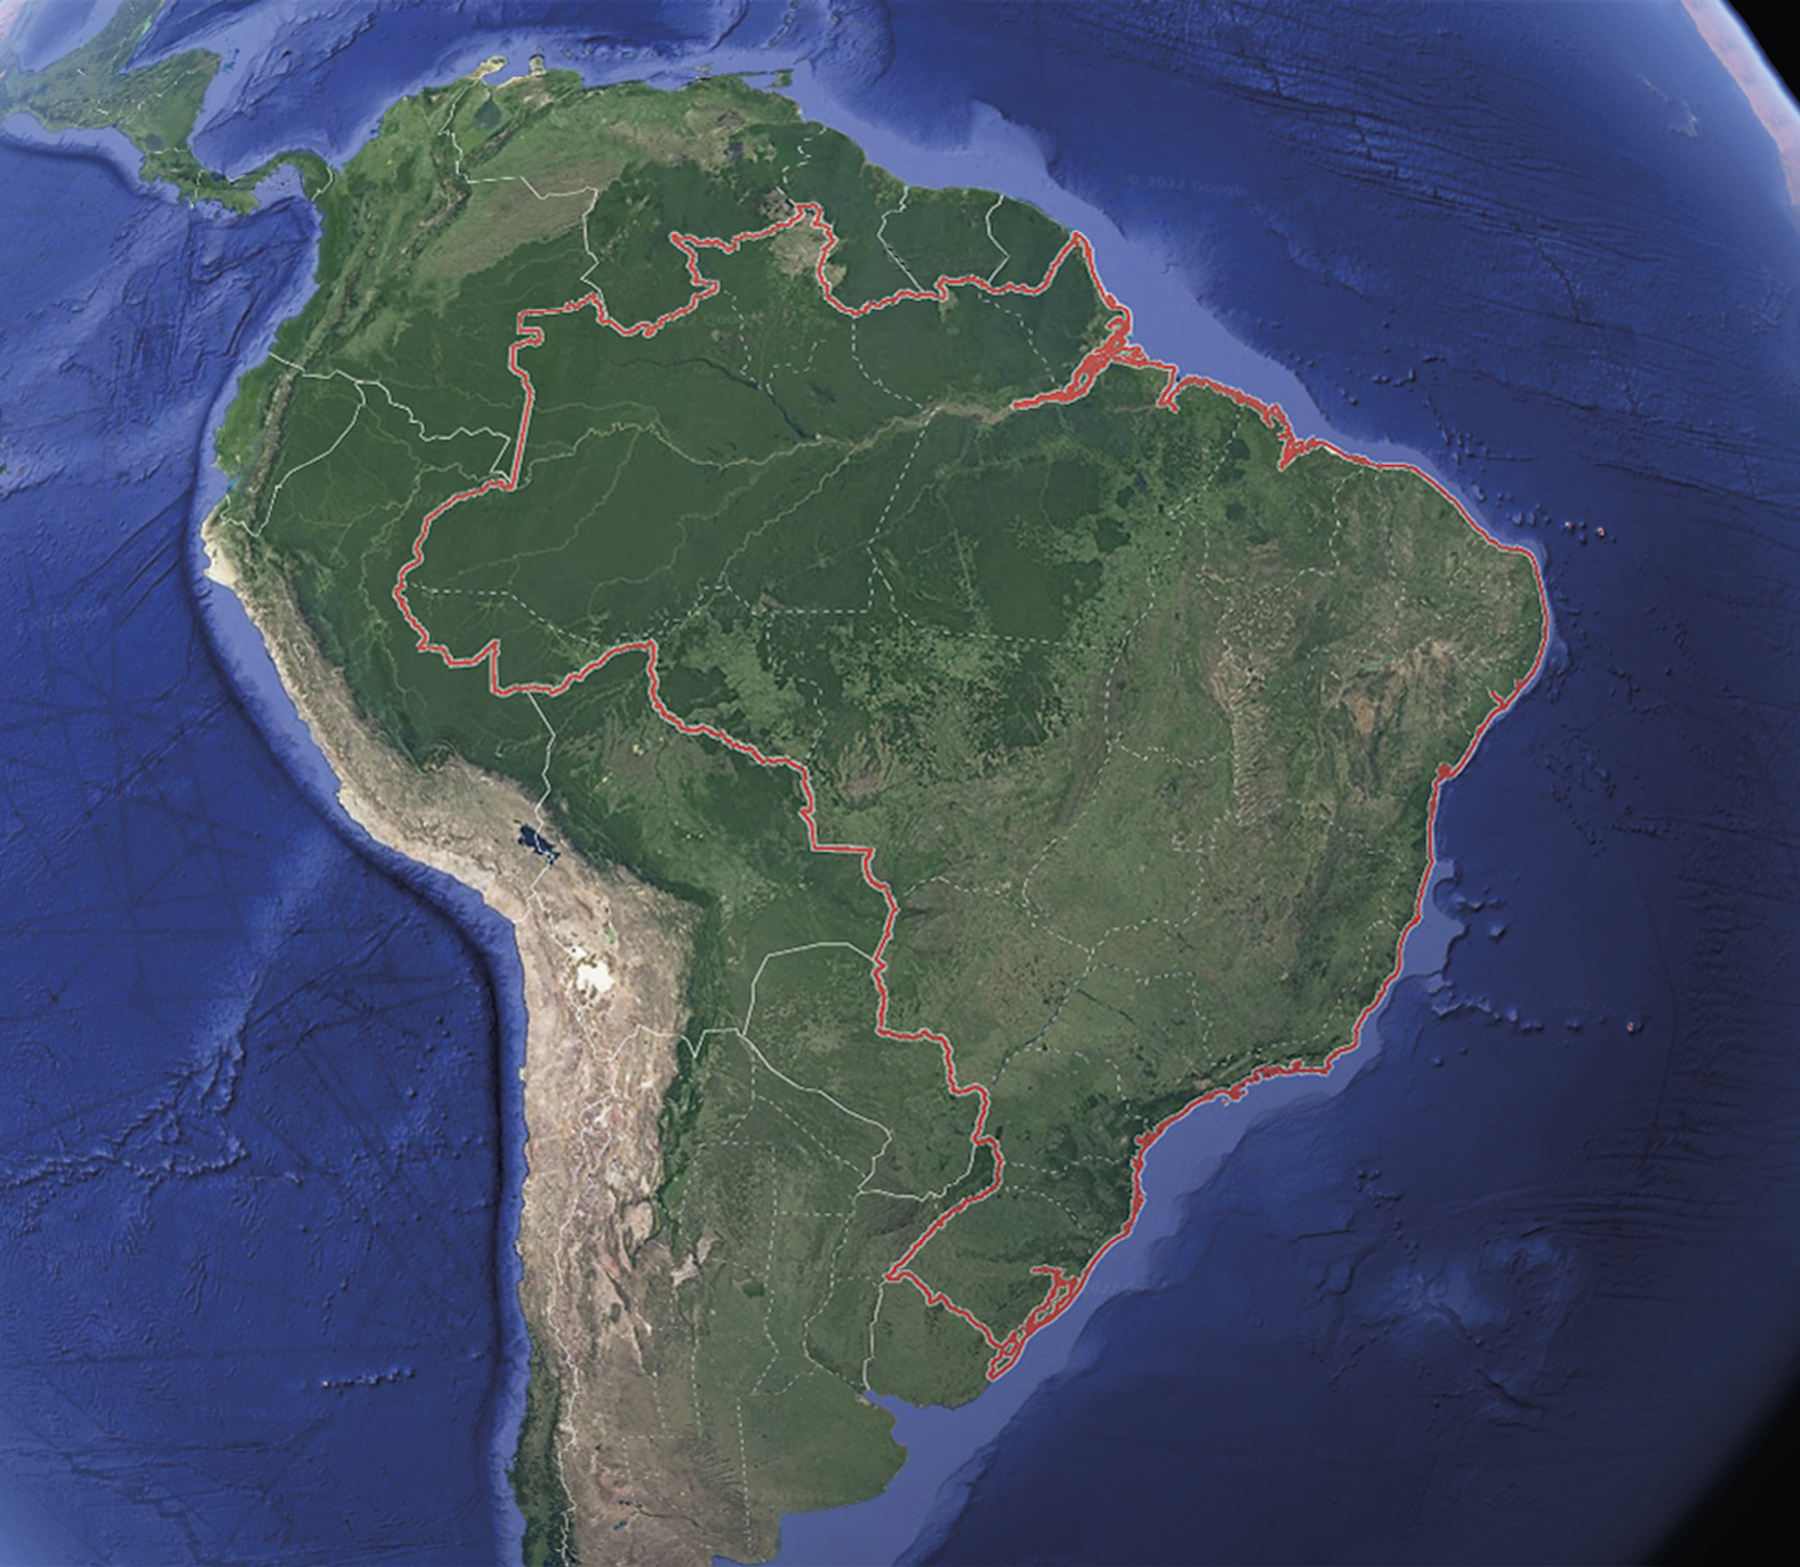 Imagem de satélite. A imagem enfoca a América do Sul e os oceanos que a margeiam, evidenciando as fronteiras dos países, a divisa entre as unidades da federação e o relevo oceânico. Na parte continental, há áreas em tons de verde, marrom e bege. As águas oceânicas são representadas em tons de azul. Uma linha vermelha contorna a fronteira terrestre do Brasil, destacando o país em relação às outras porções do território